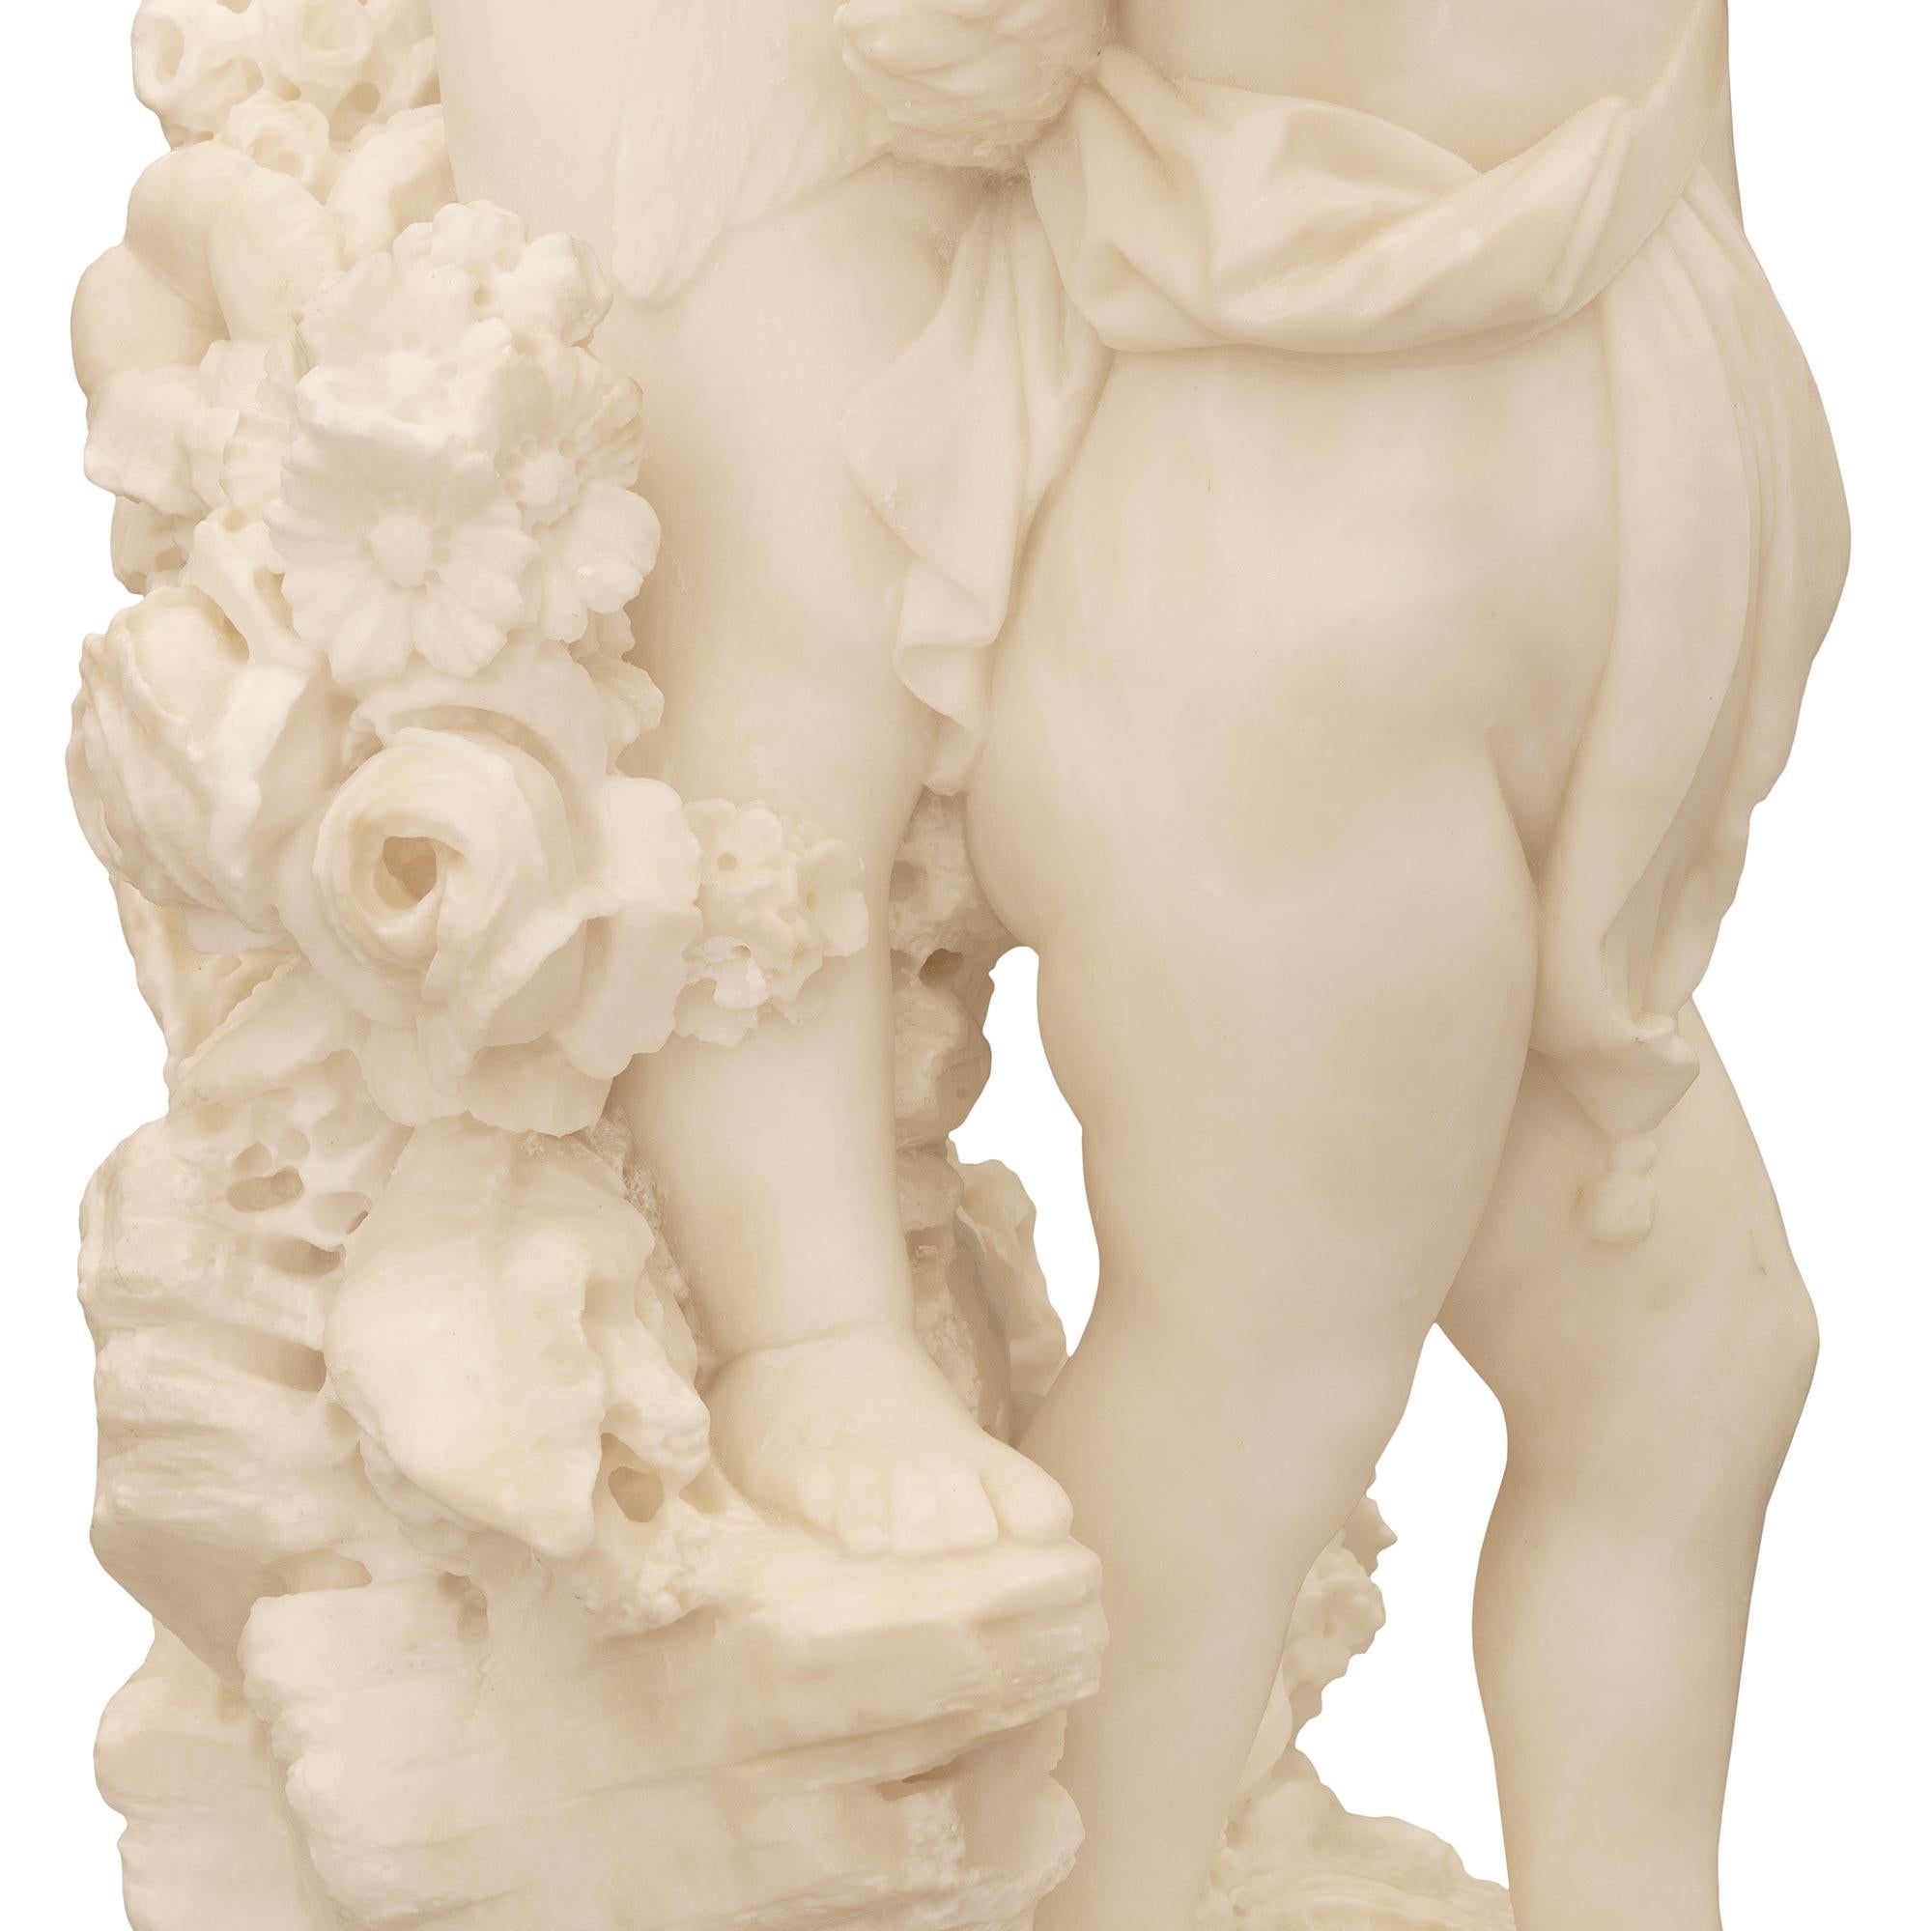 Italian 19th Century White Carrara Marble Statue Titled “Amore Sdegnato” For Sale 7